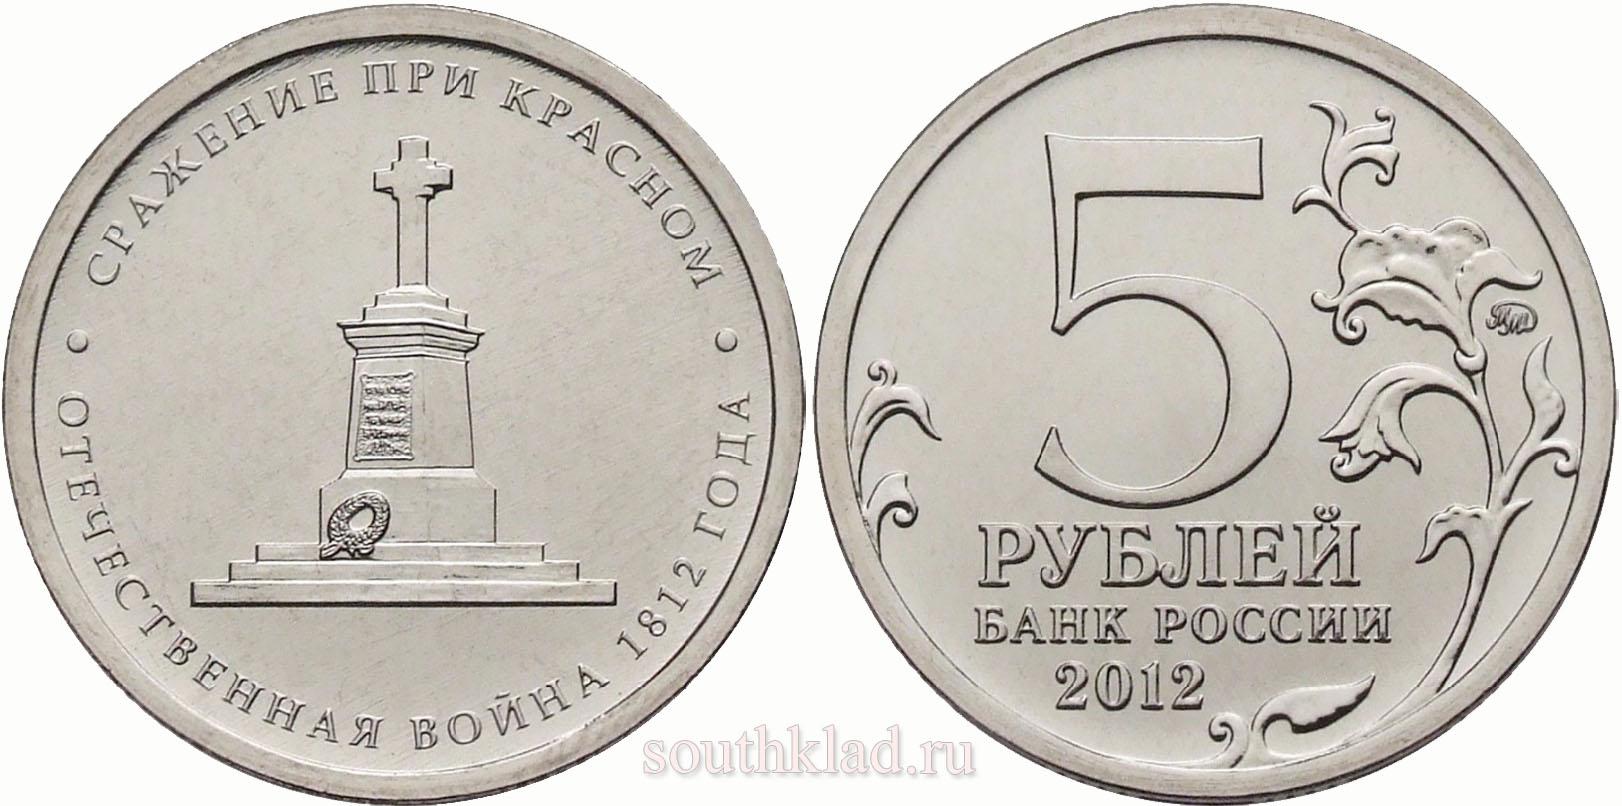 5 рублей 2012 года "Сражение при красном"